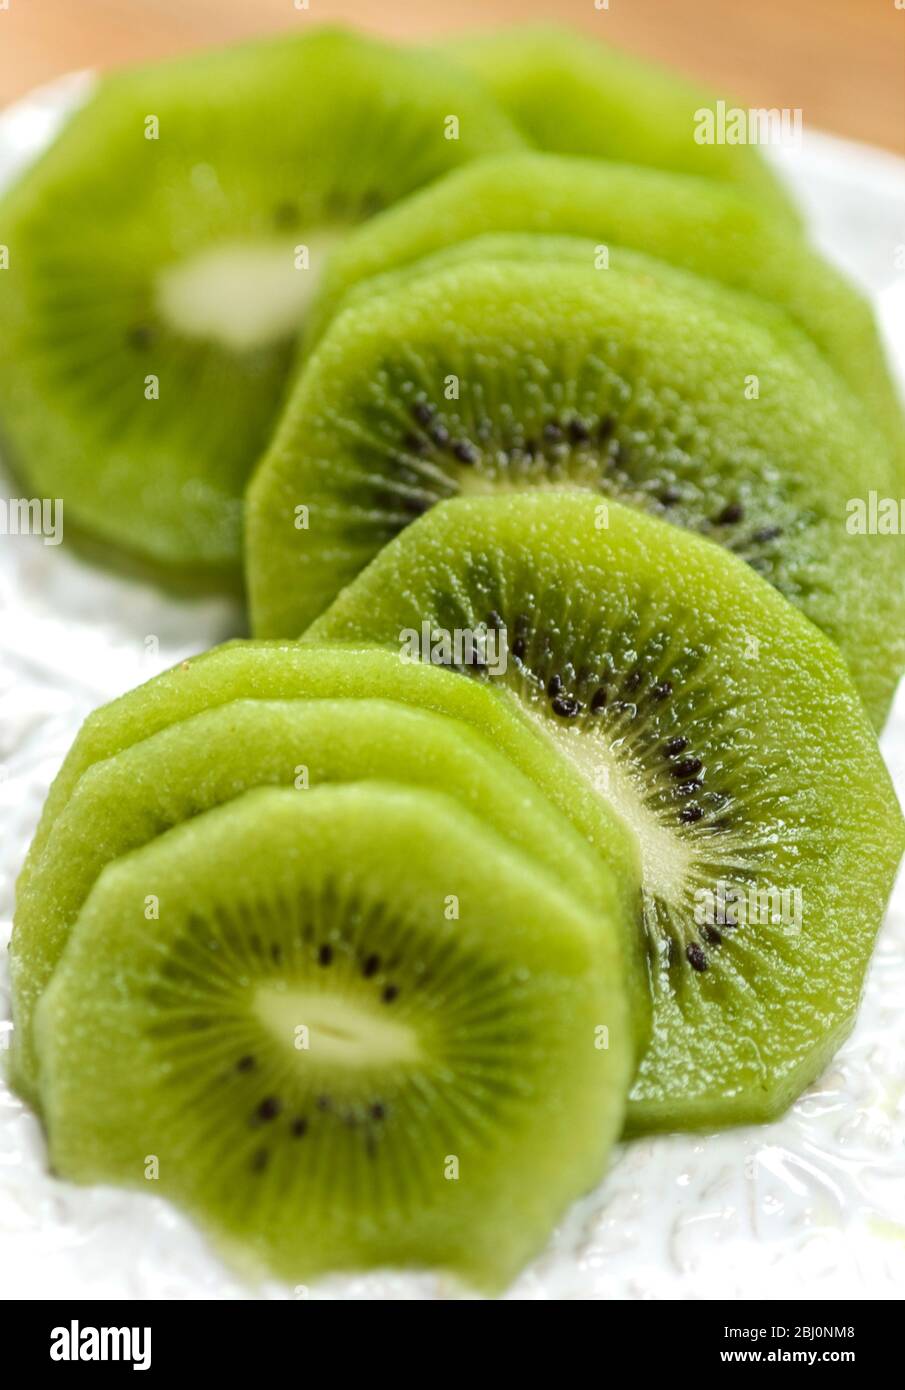 Scheiben geschälte Kiwi-Früchte auf weißem, strukturiertem Teller - Stockfoto